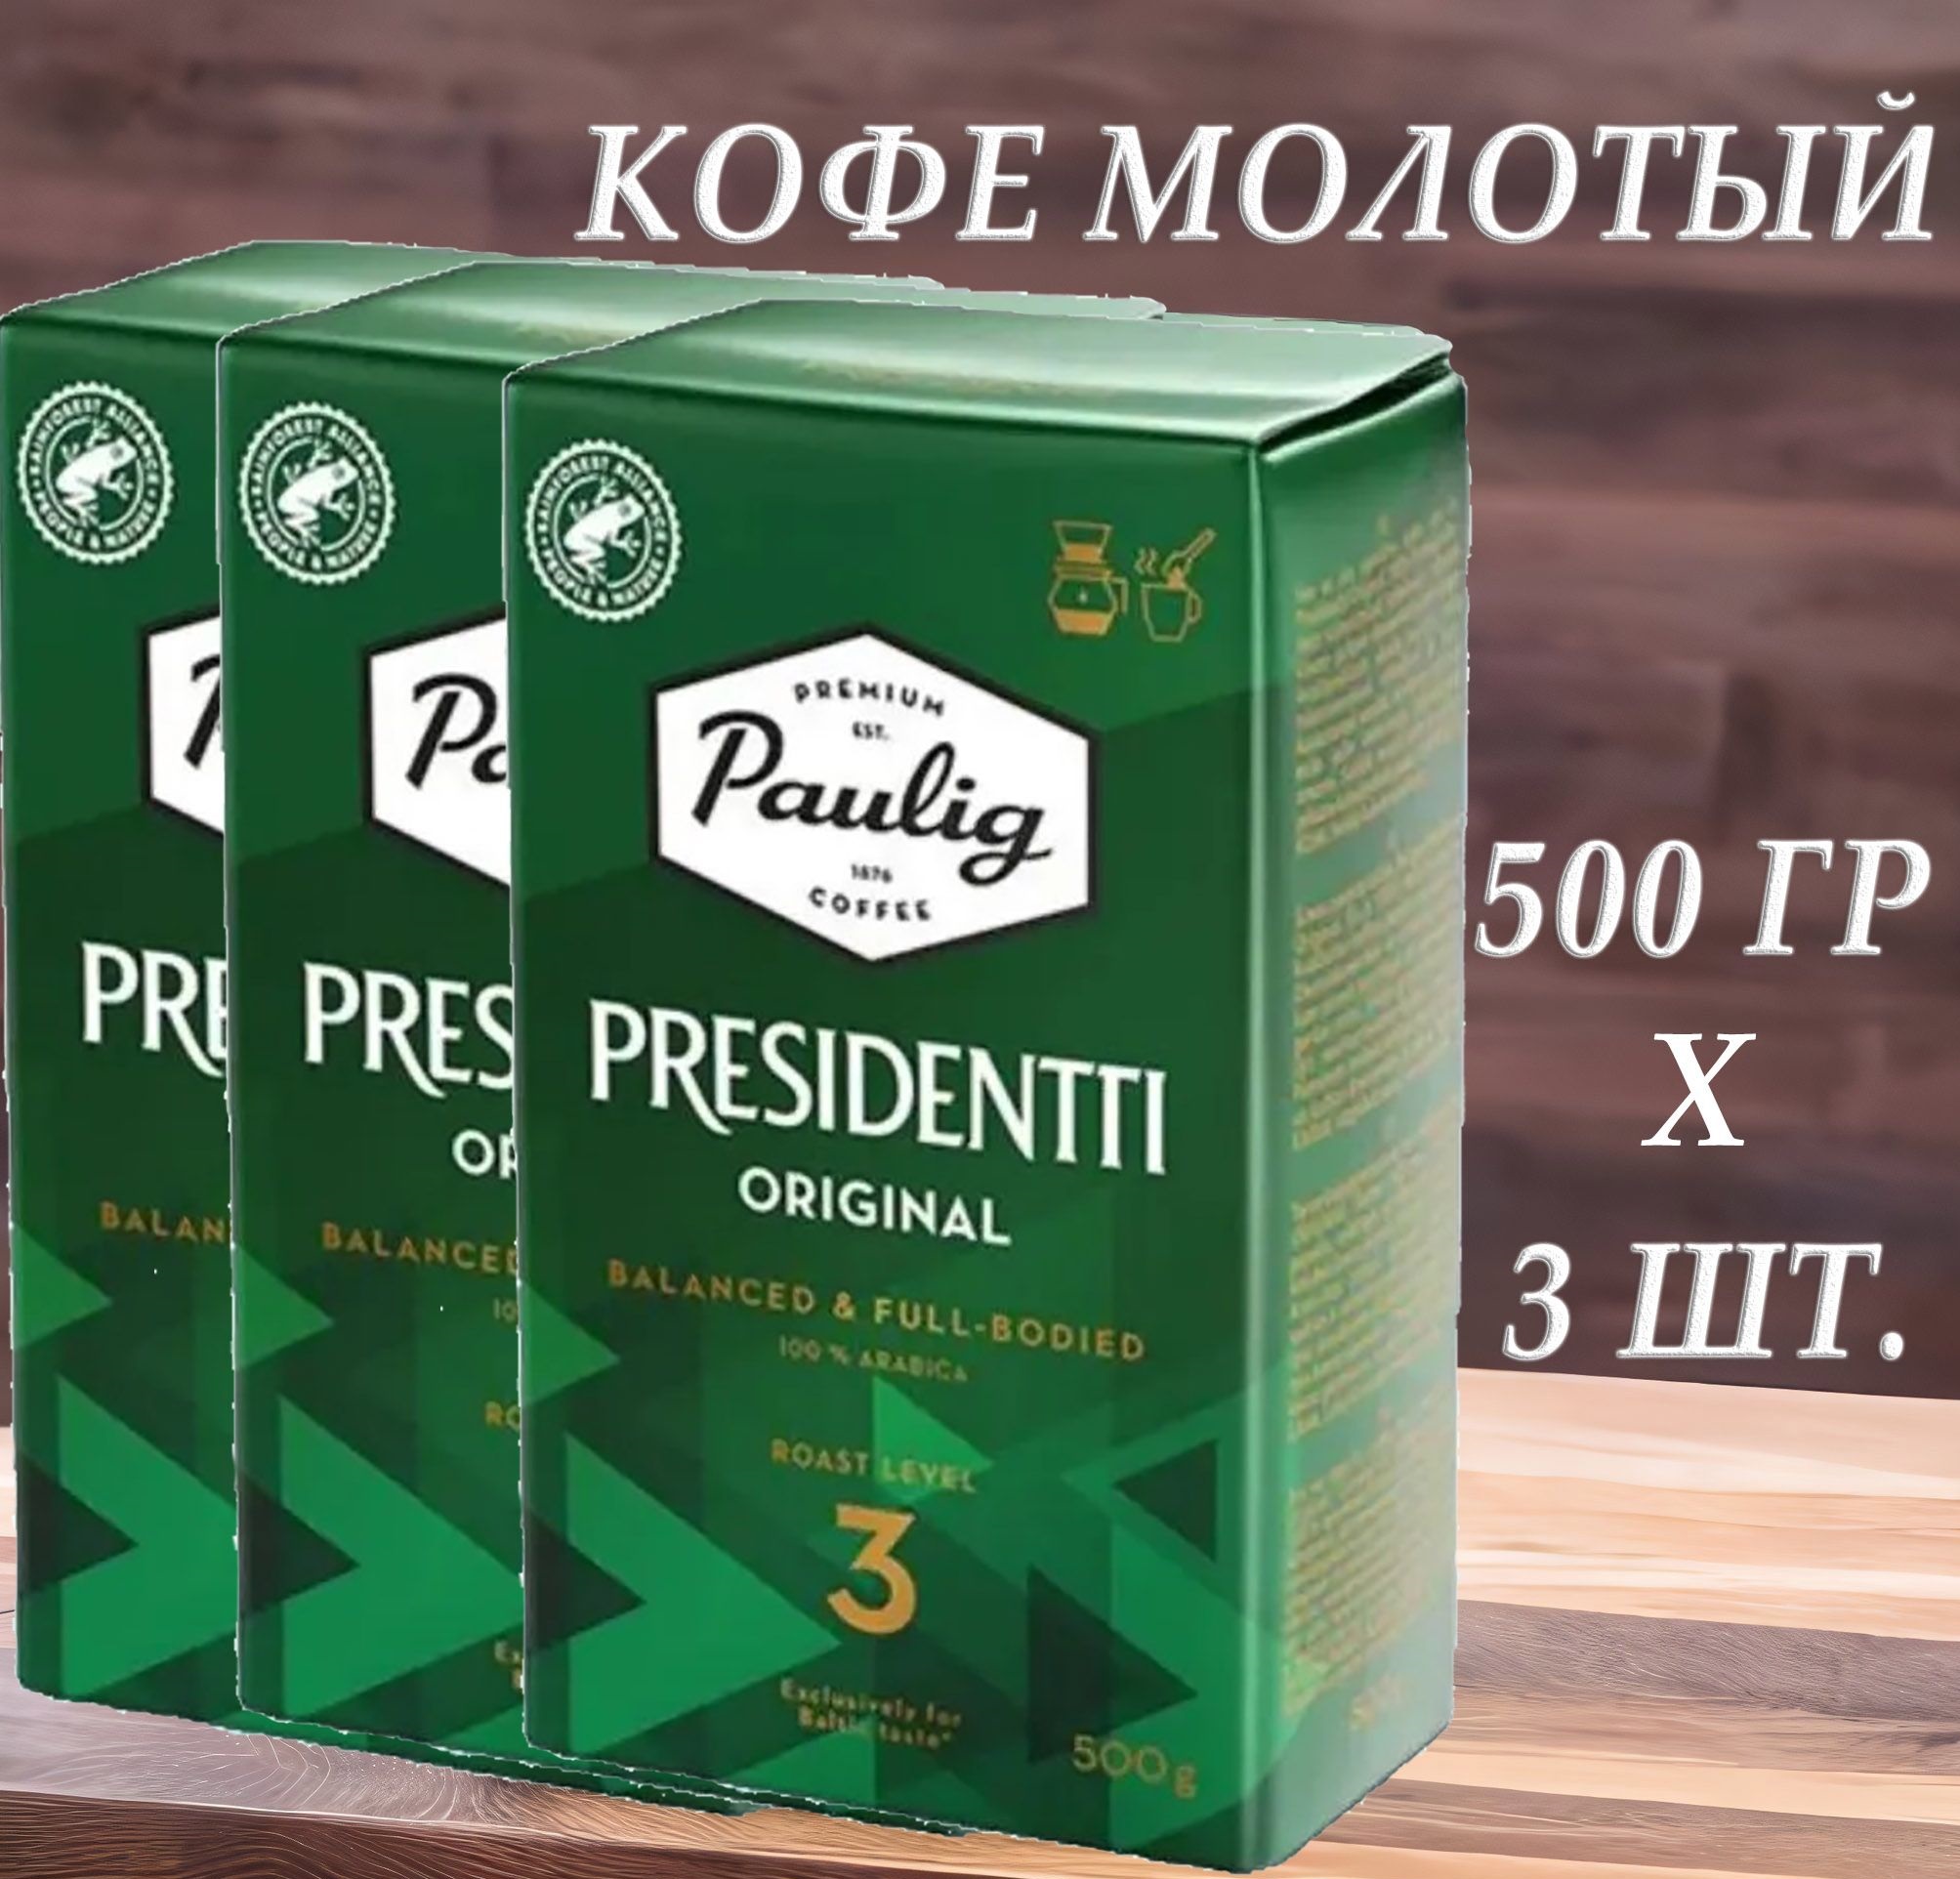 Кофе молотый Paulig Presidentti Original 3, 500 г х 3 шт